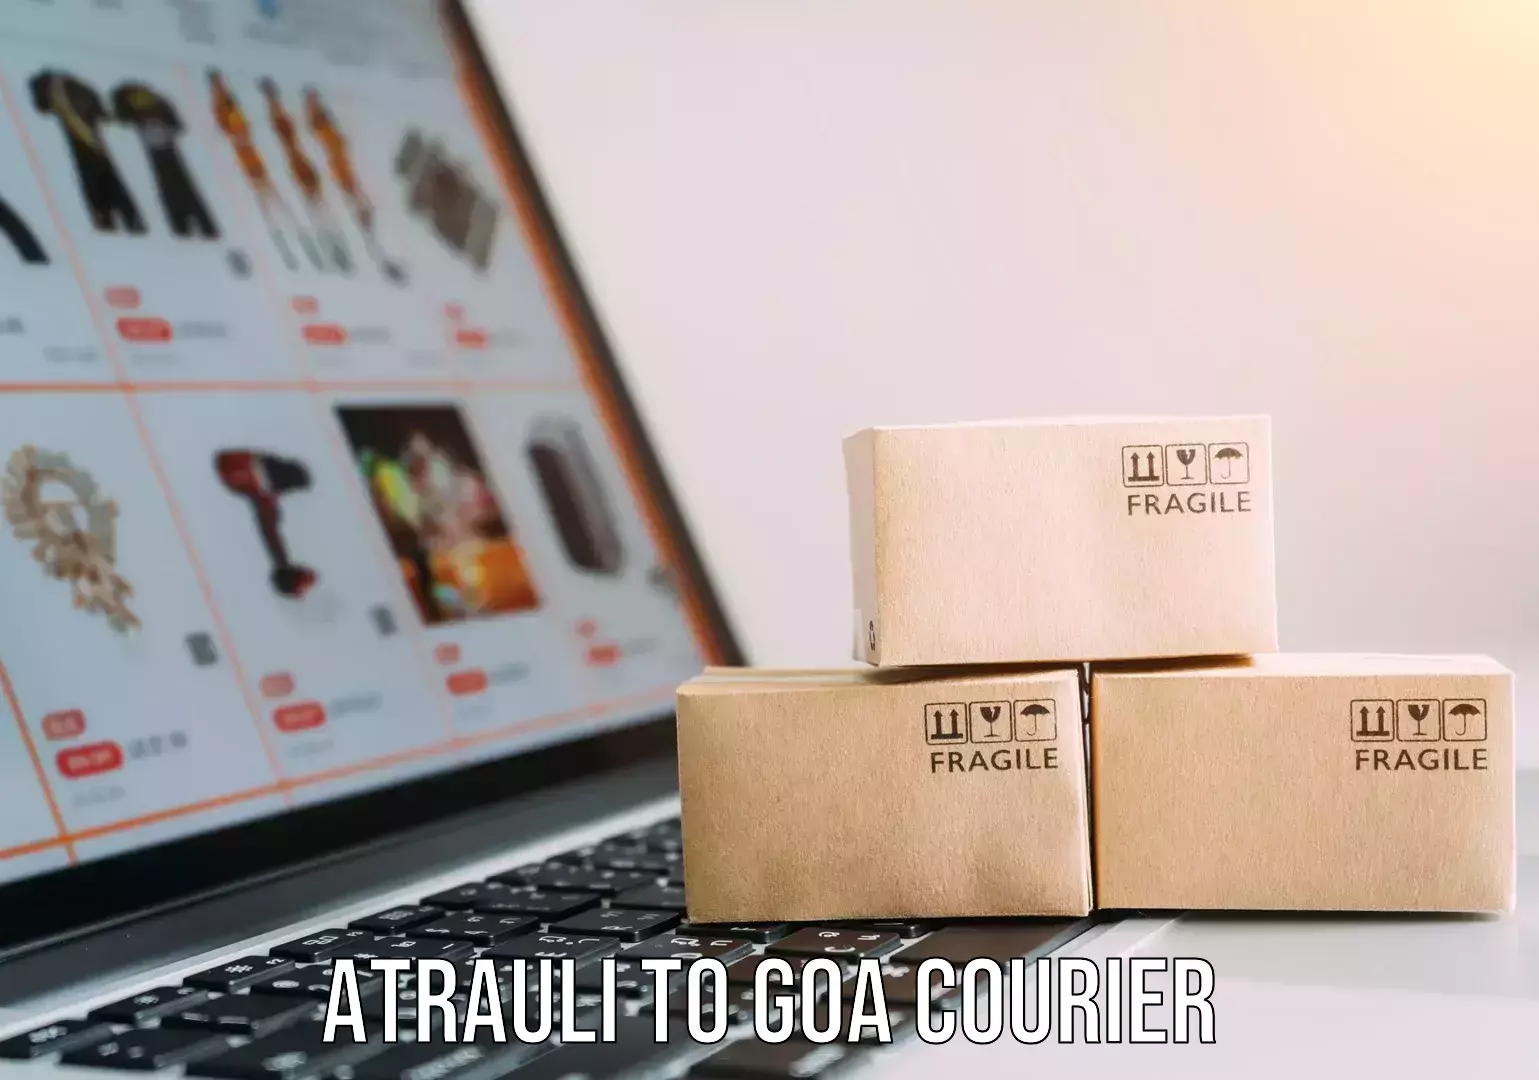 Digital courier platforms Atrauli to Goa